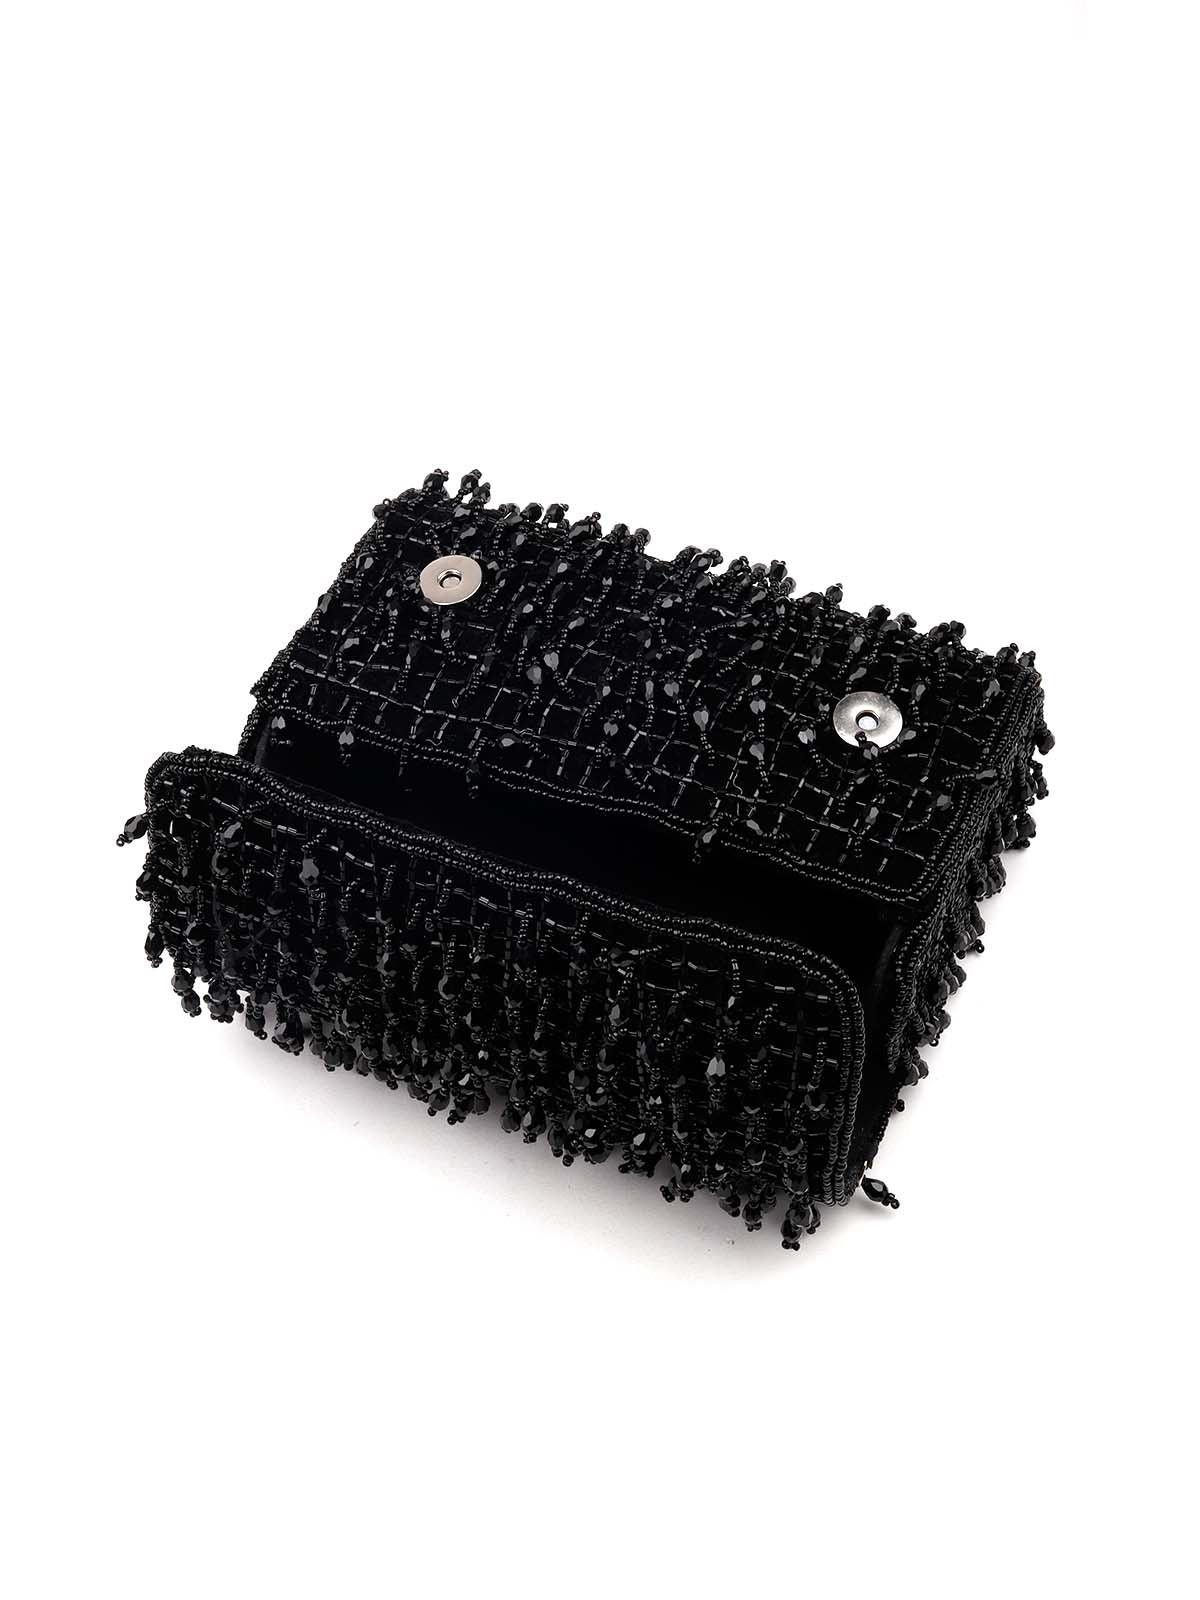 Stunning Black embellished sling bag - Odette